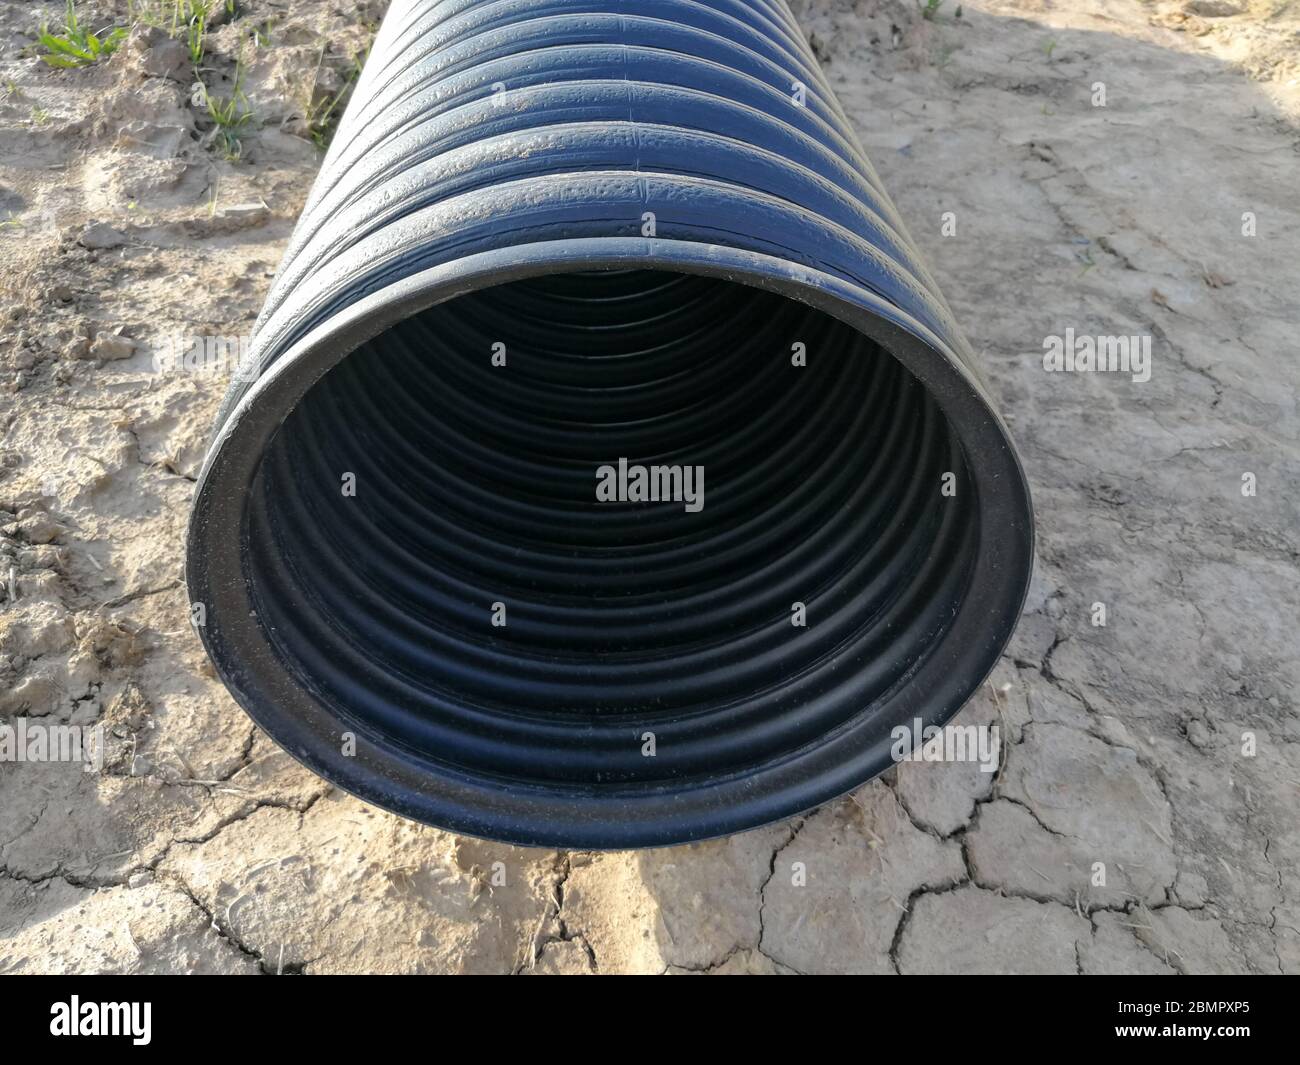 Tubo corrugado negro con extractor de hilo de 20 mm de diámetro